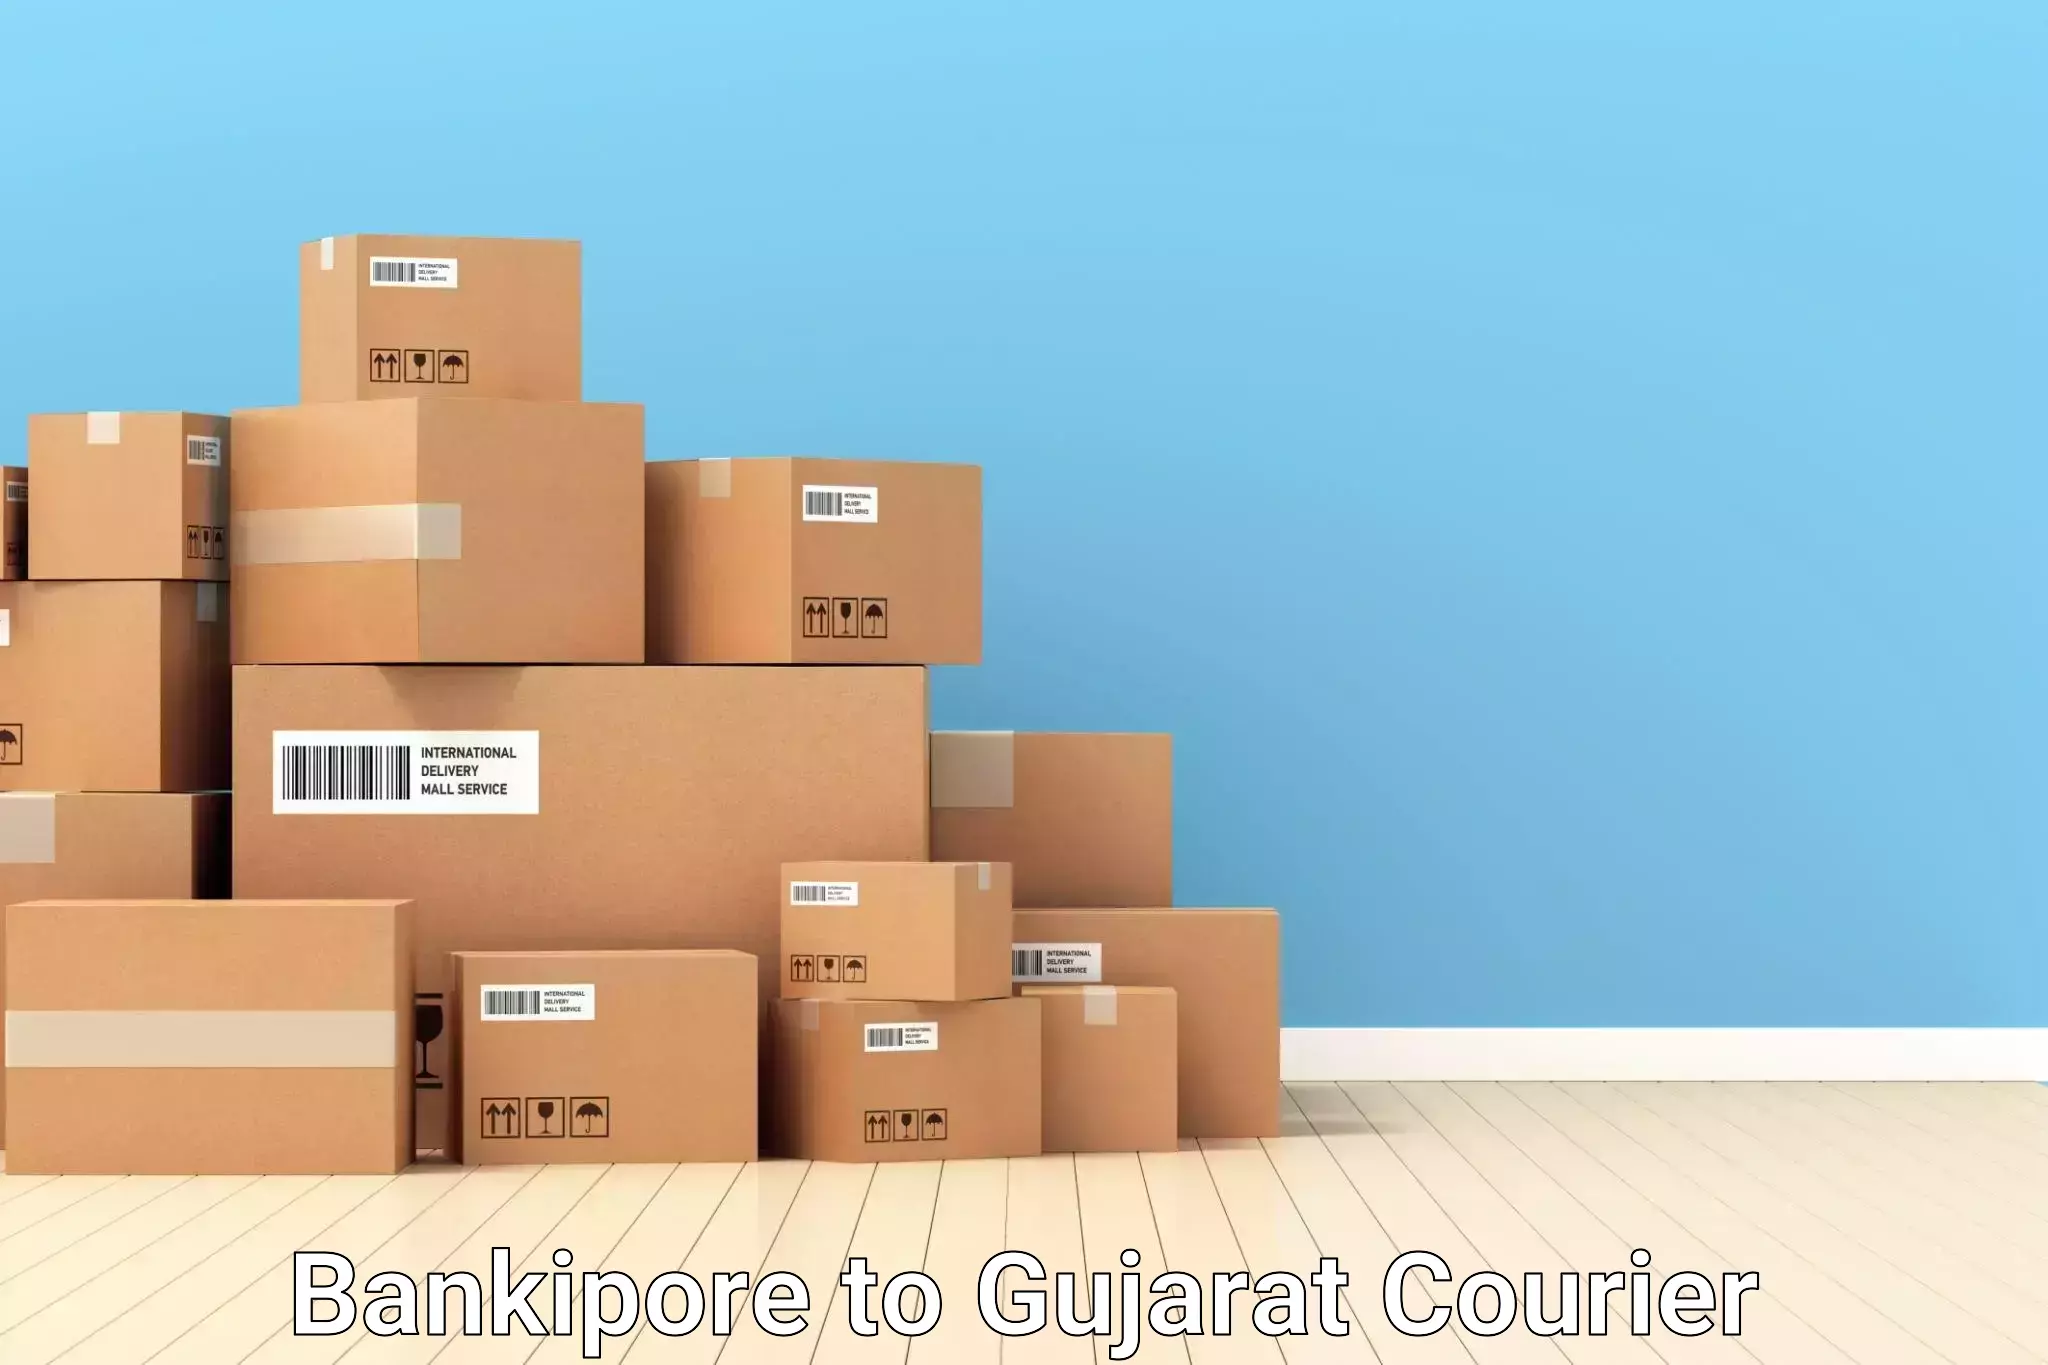 Baggage delivery optimization Bankipore to Narmada Gujarat